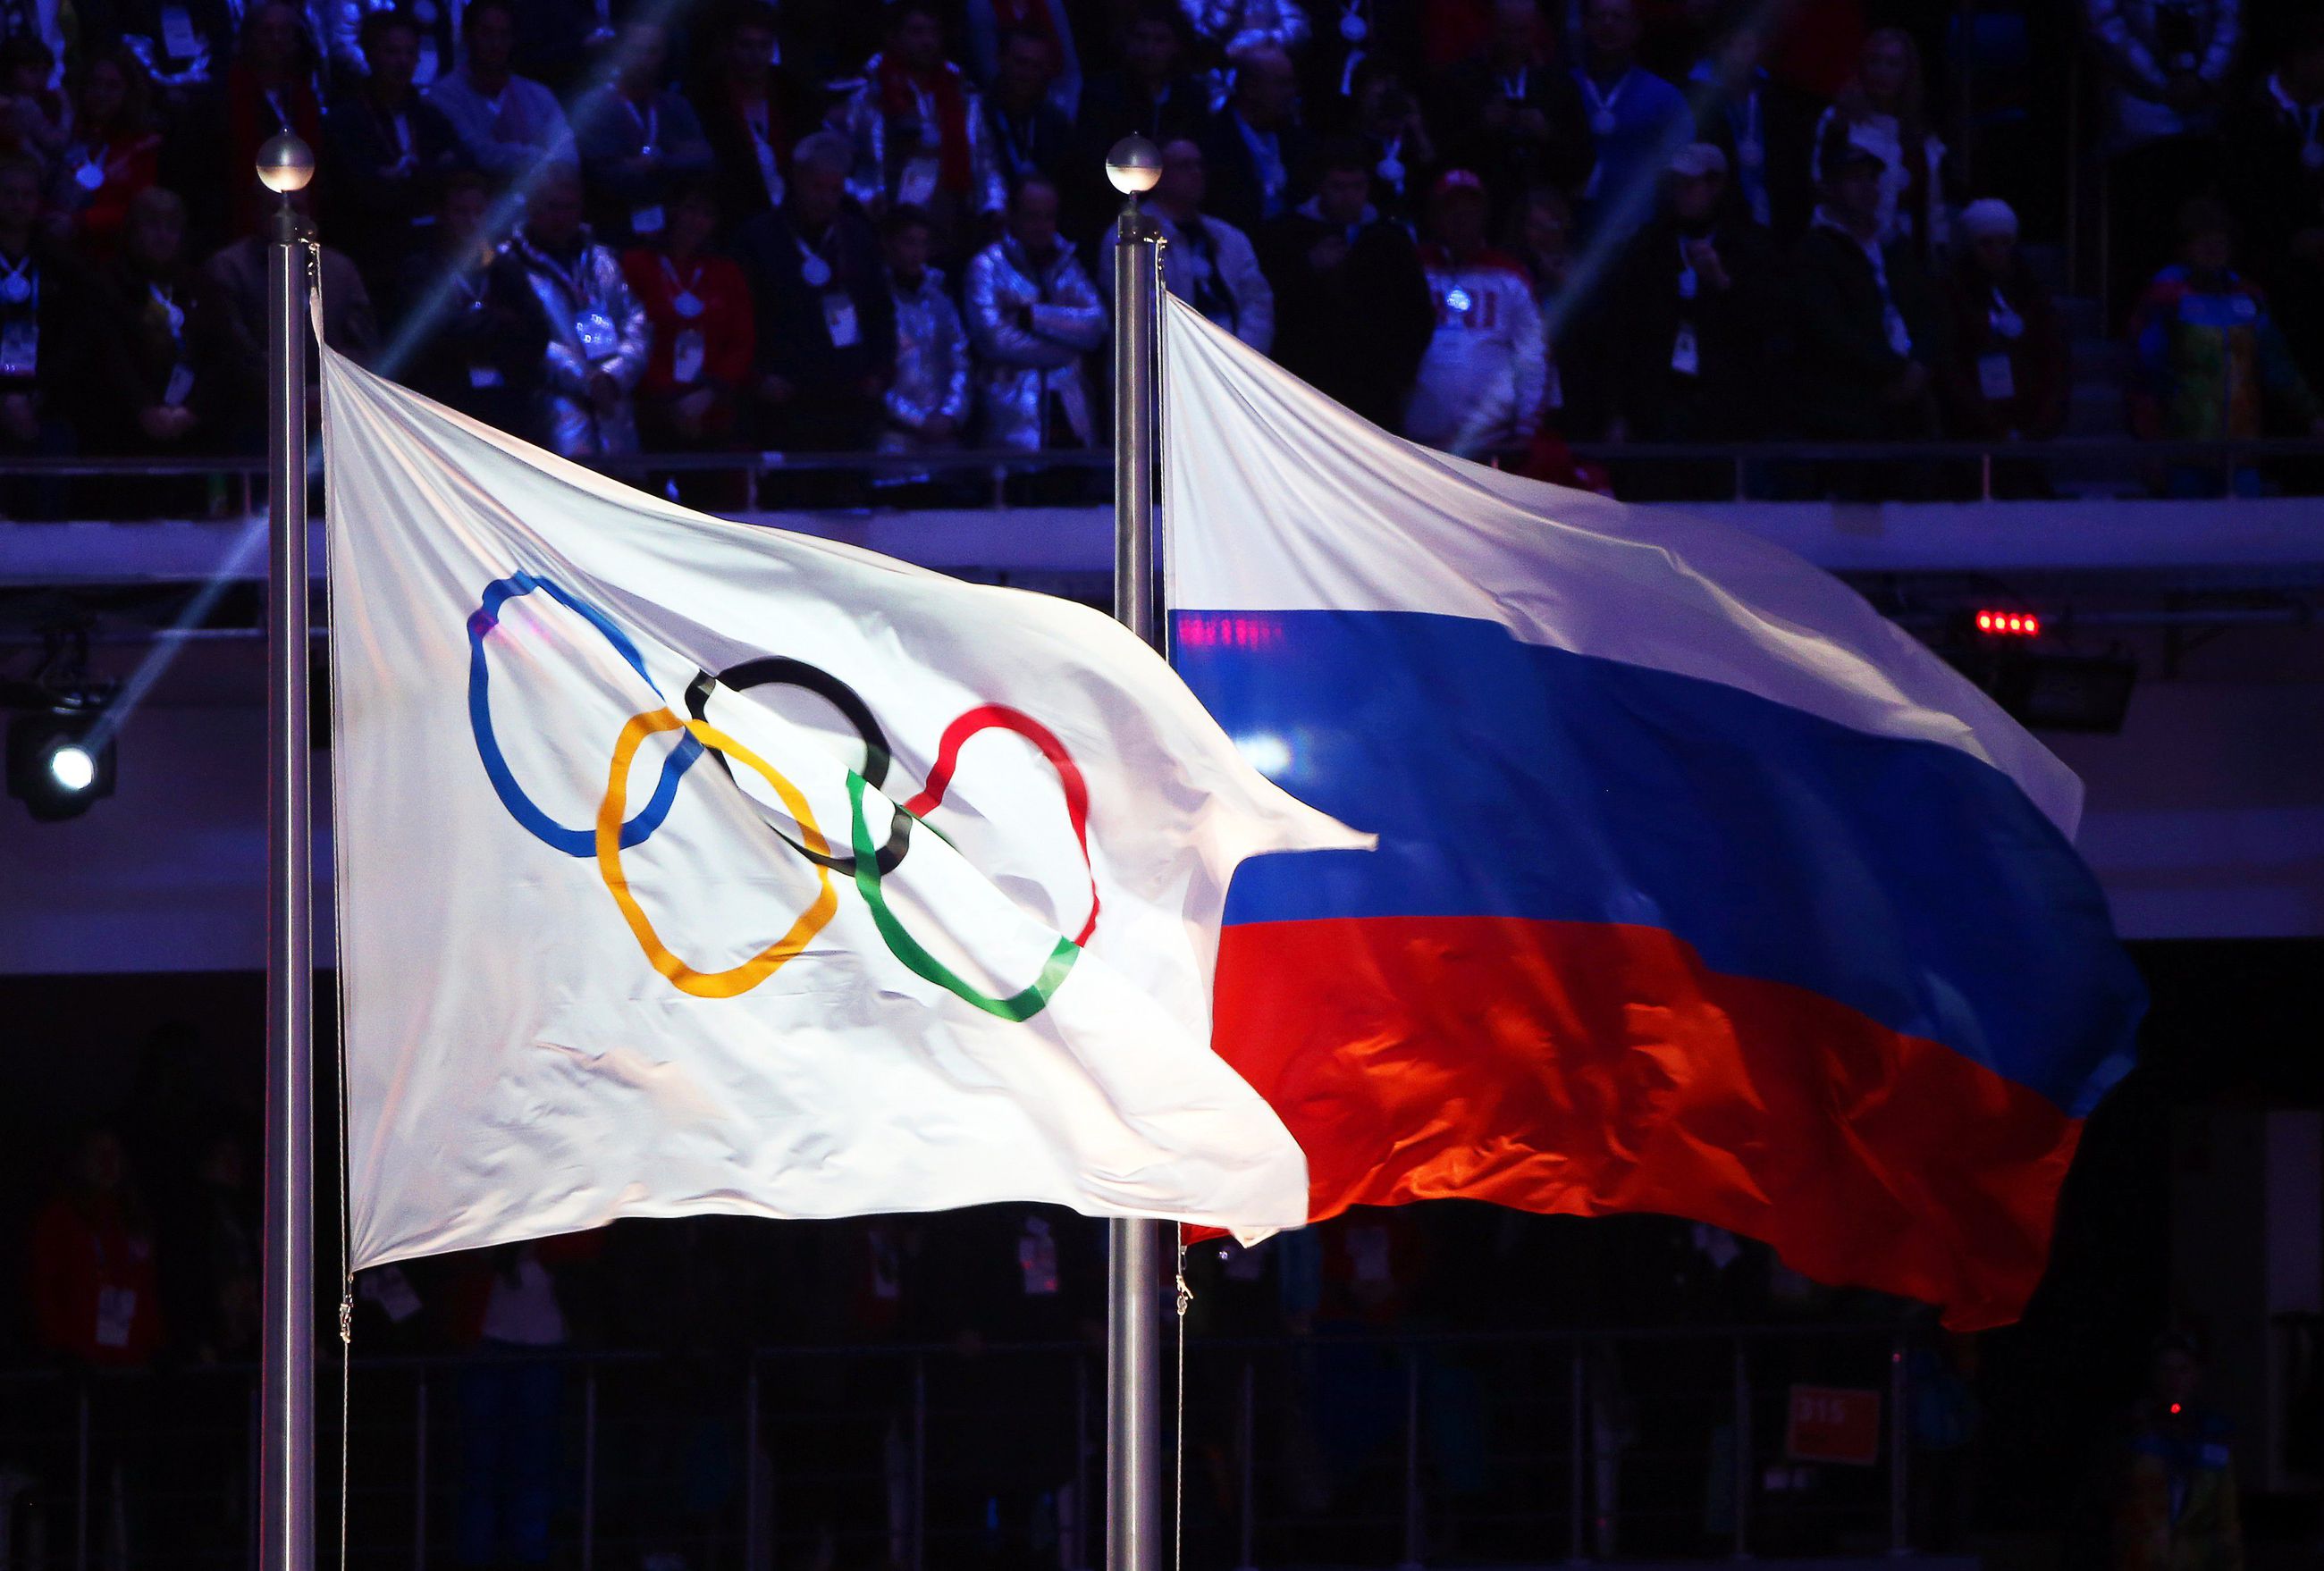 Venäjä suljettiin arvokilpailuista neljäksi vuodeksi – venäläisten  toimenpiteet dopingongelman kitkemiseksi vakuuttaneet Wadaa | Kaleva